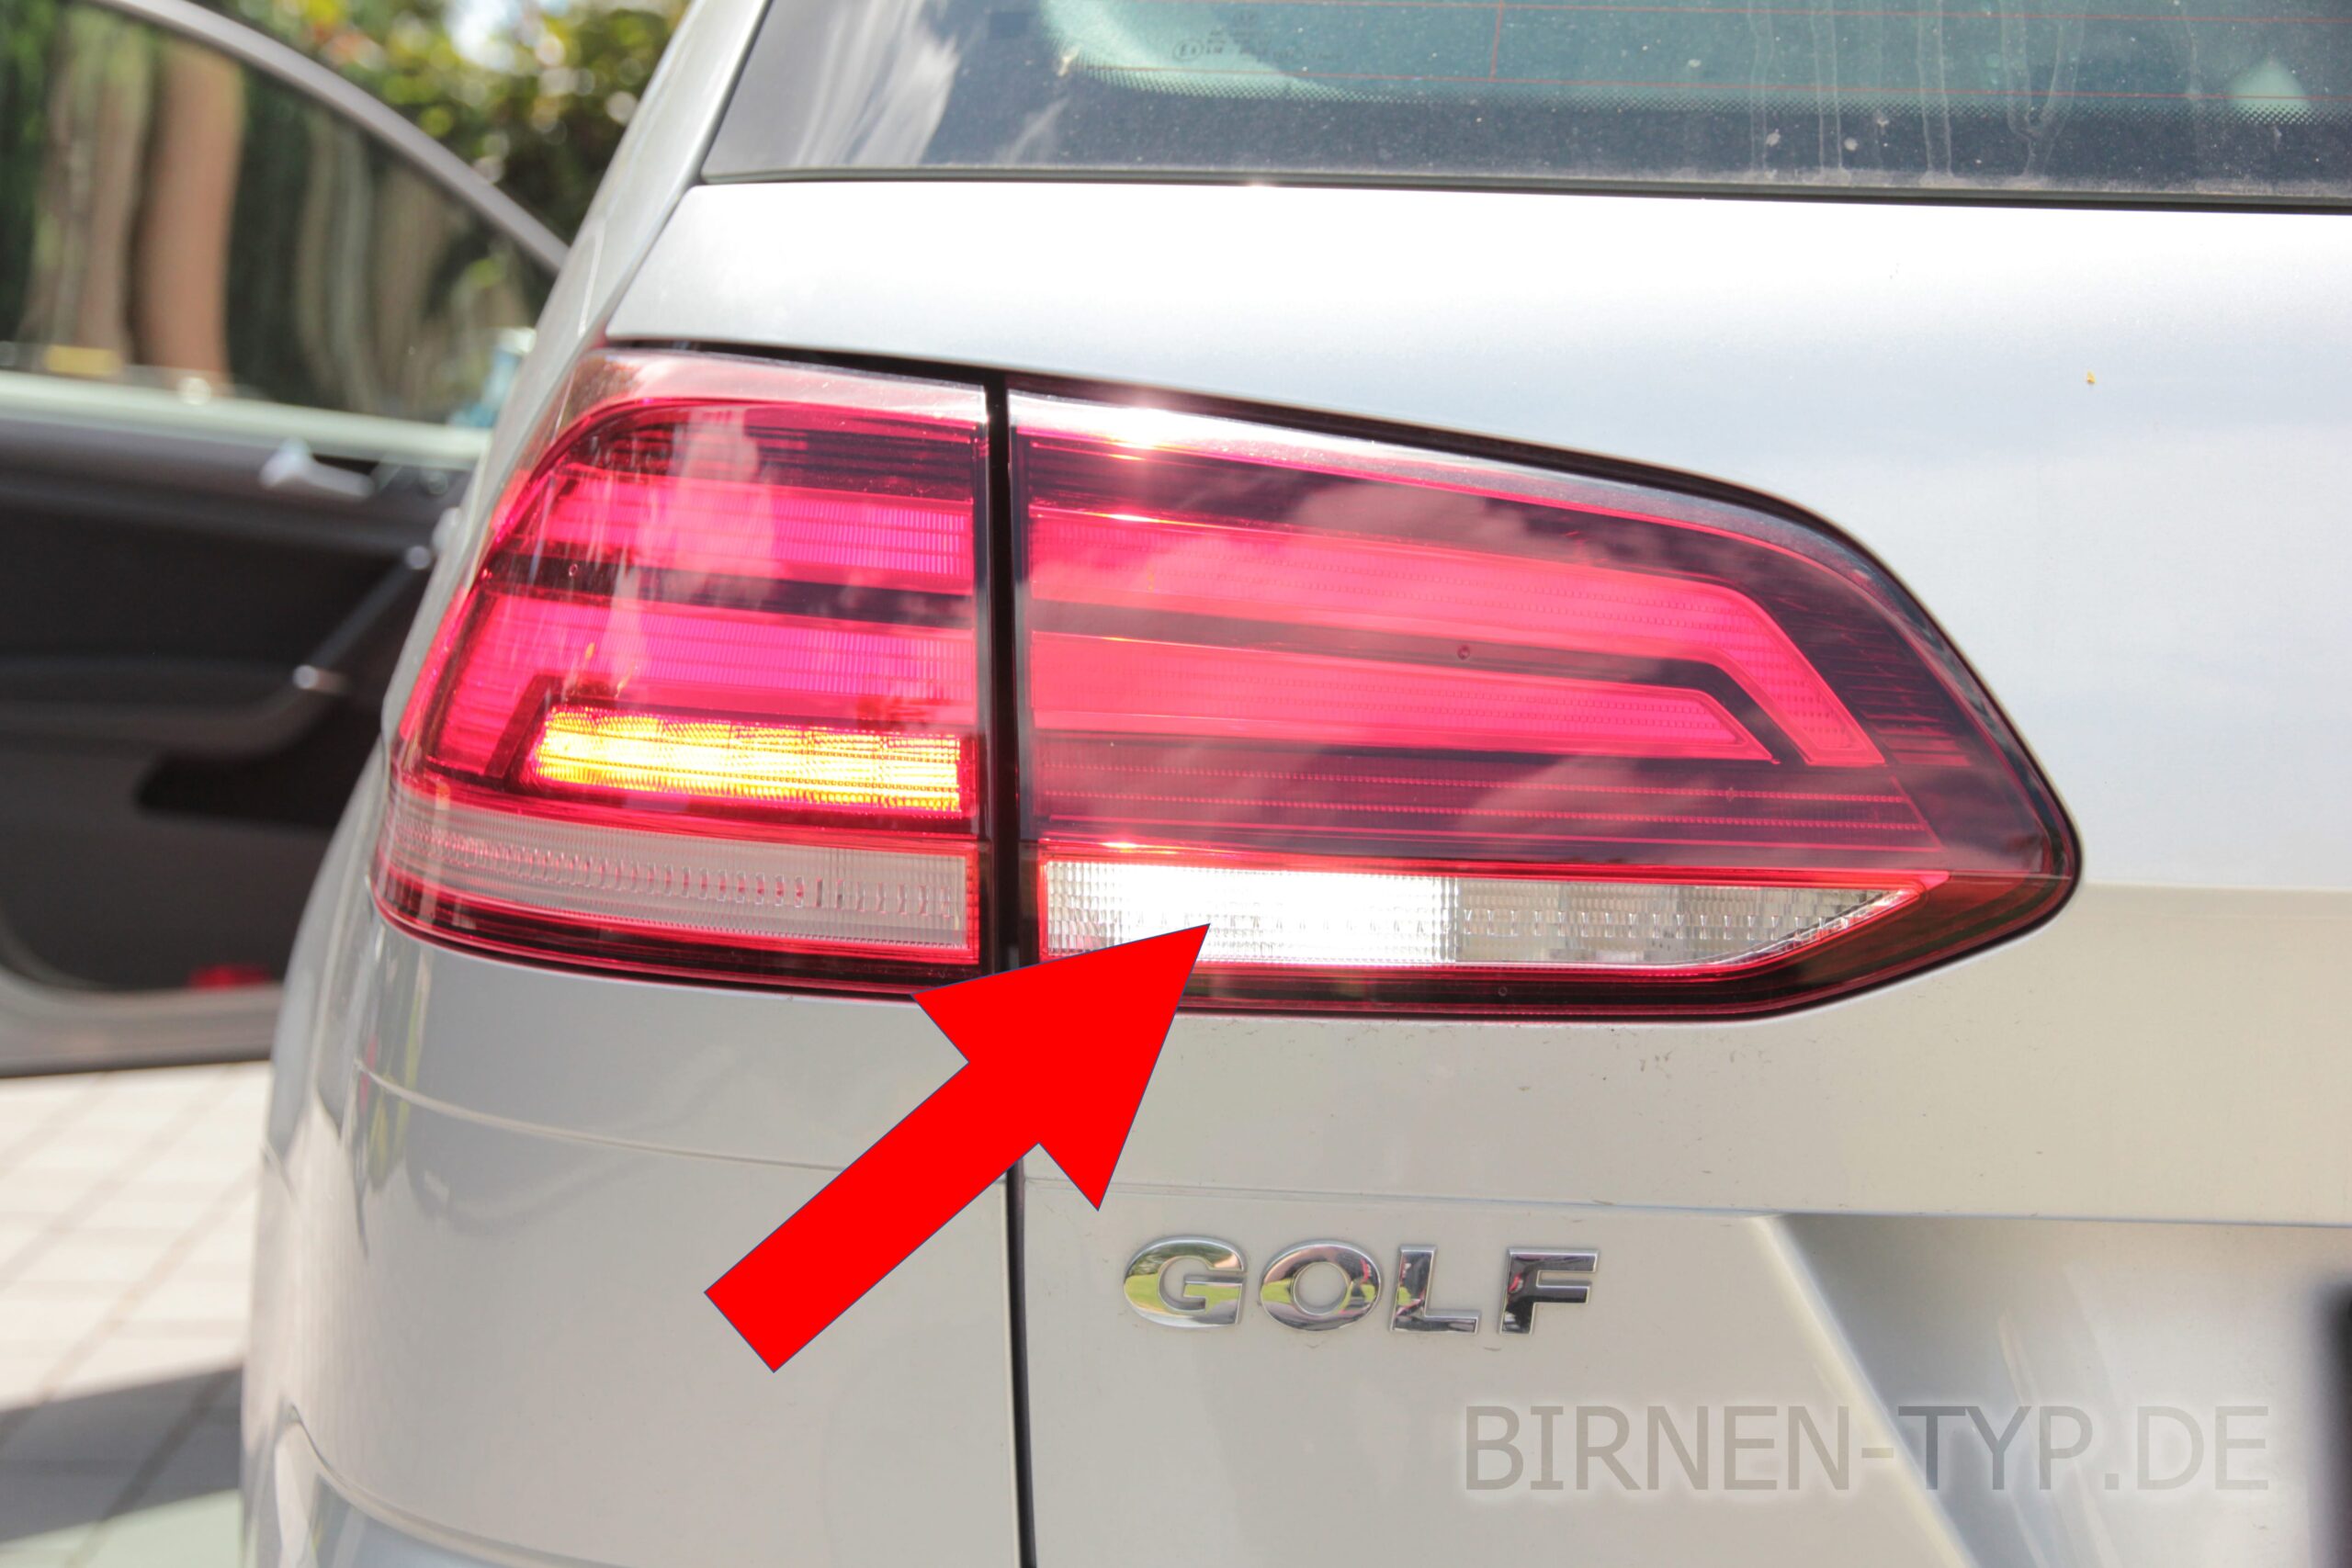 Abblendlicht-Glühlampe für Golf 7 Variant LED und Xenon zum günstigen Preis  kaufen » Katalog online